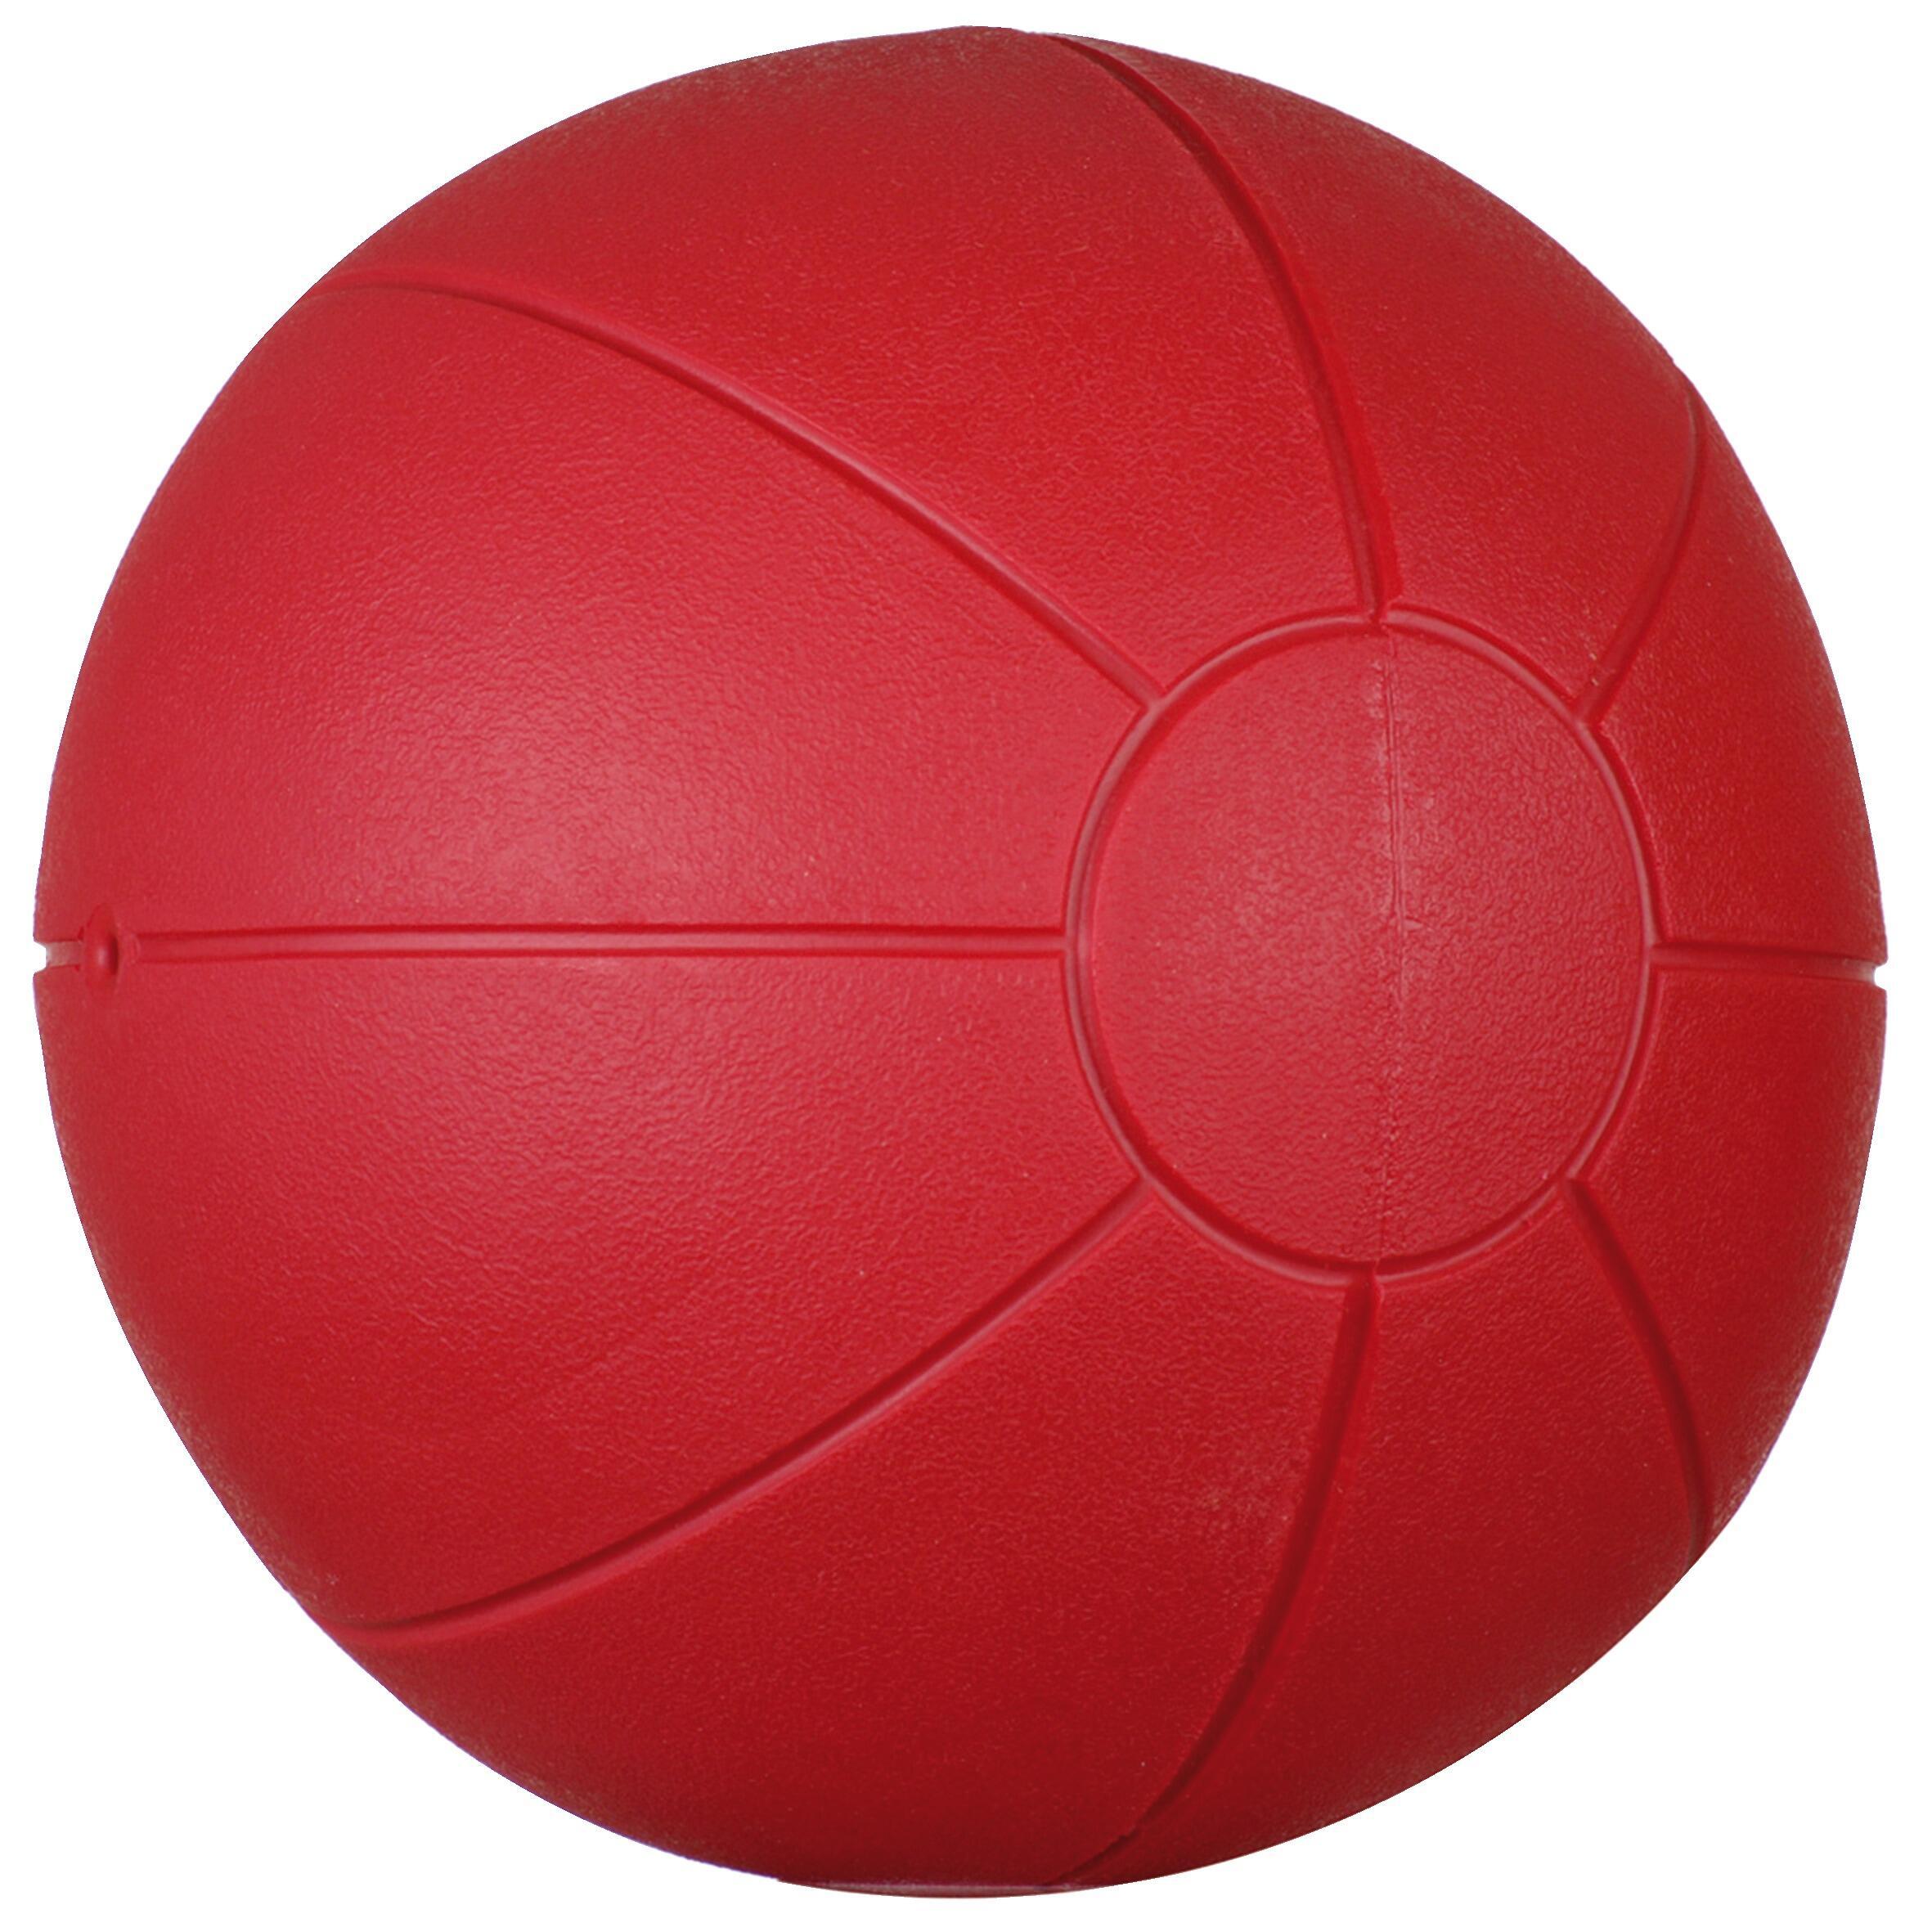 Медицинский мяч Trial Recycle, 19,5 см, красочный